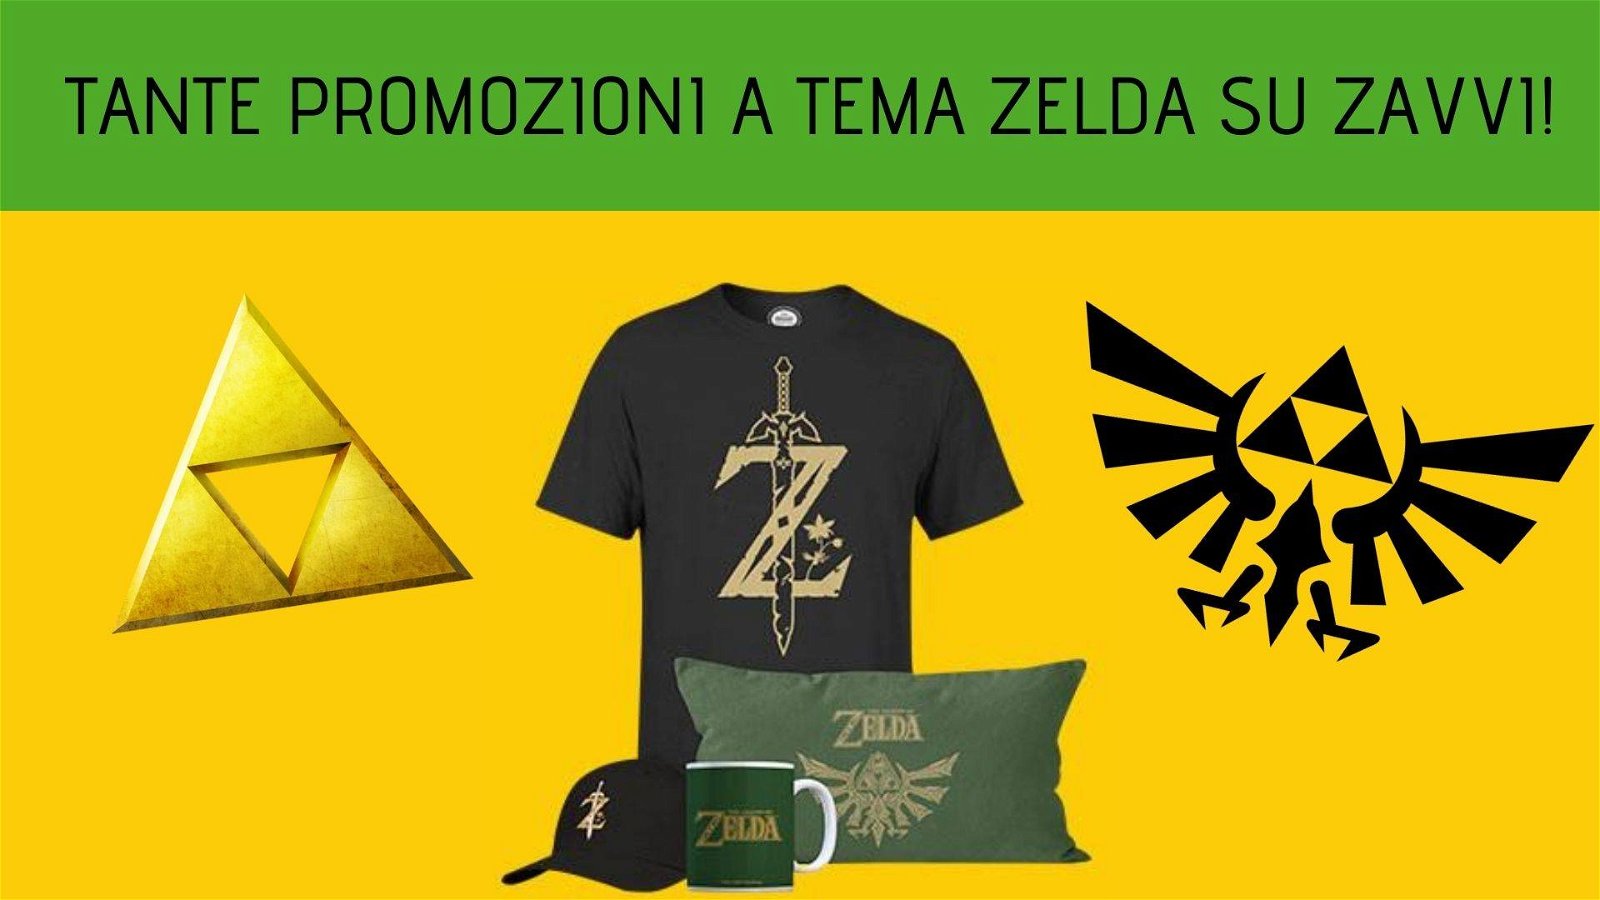 Immagine di Tante promozioni a tema The Legend of Zelda su Zavvi!